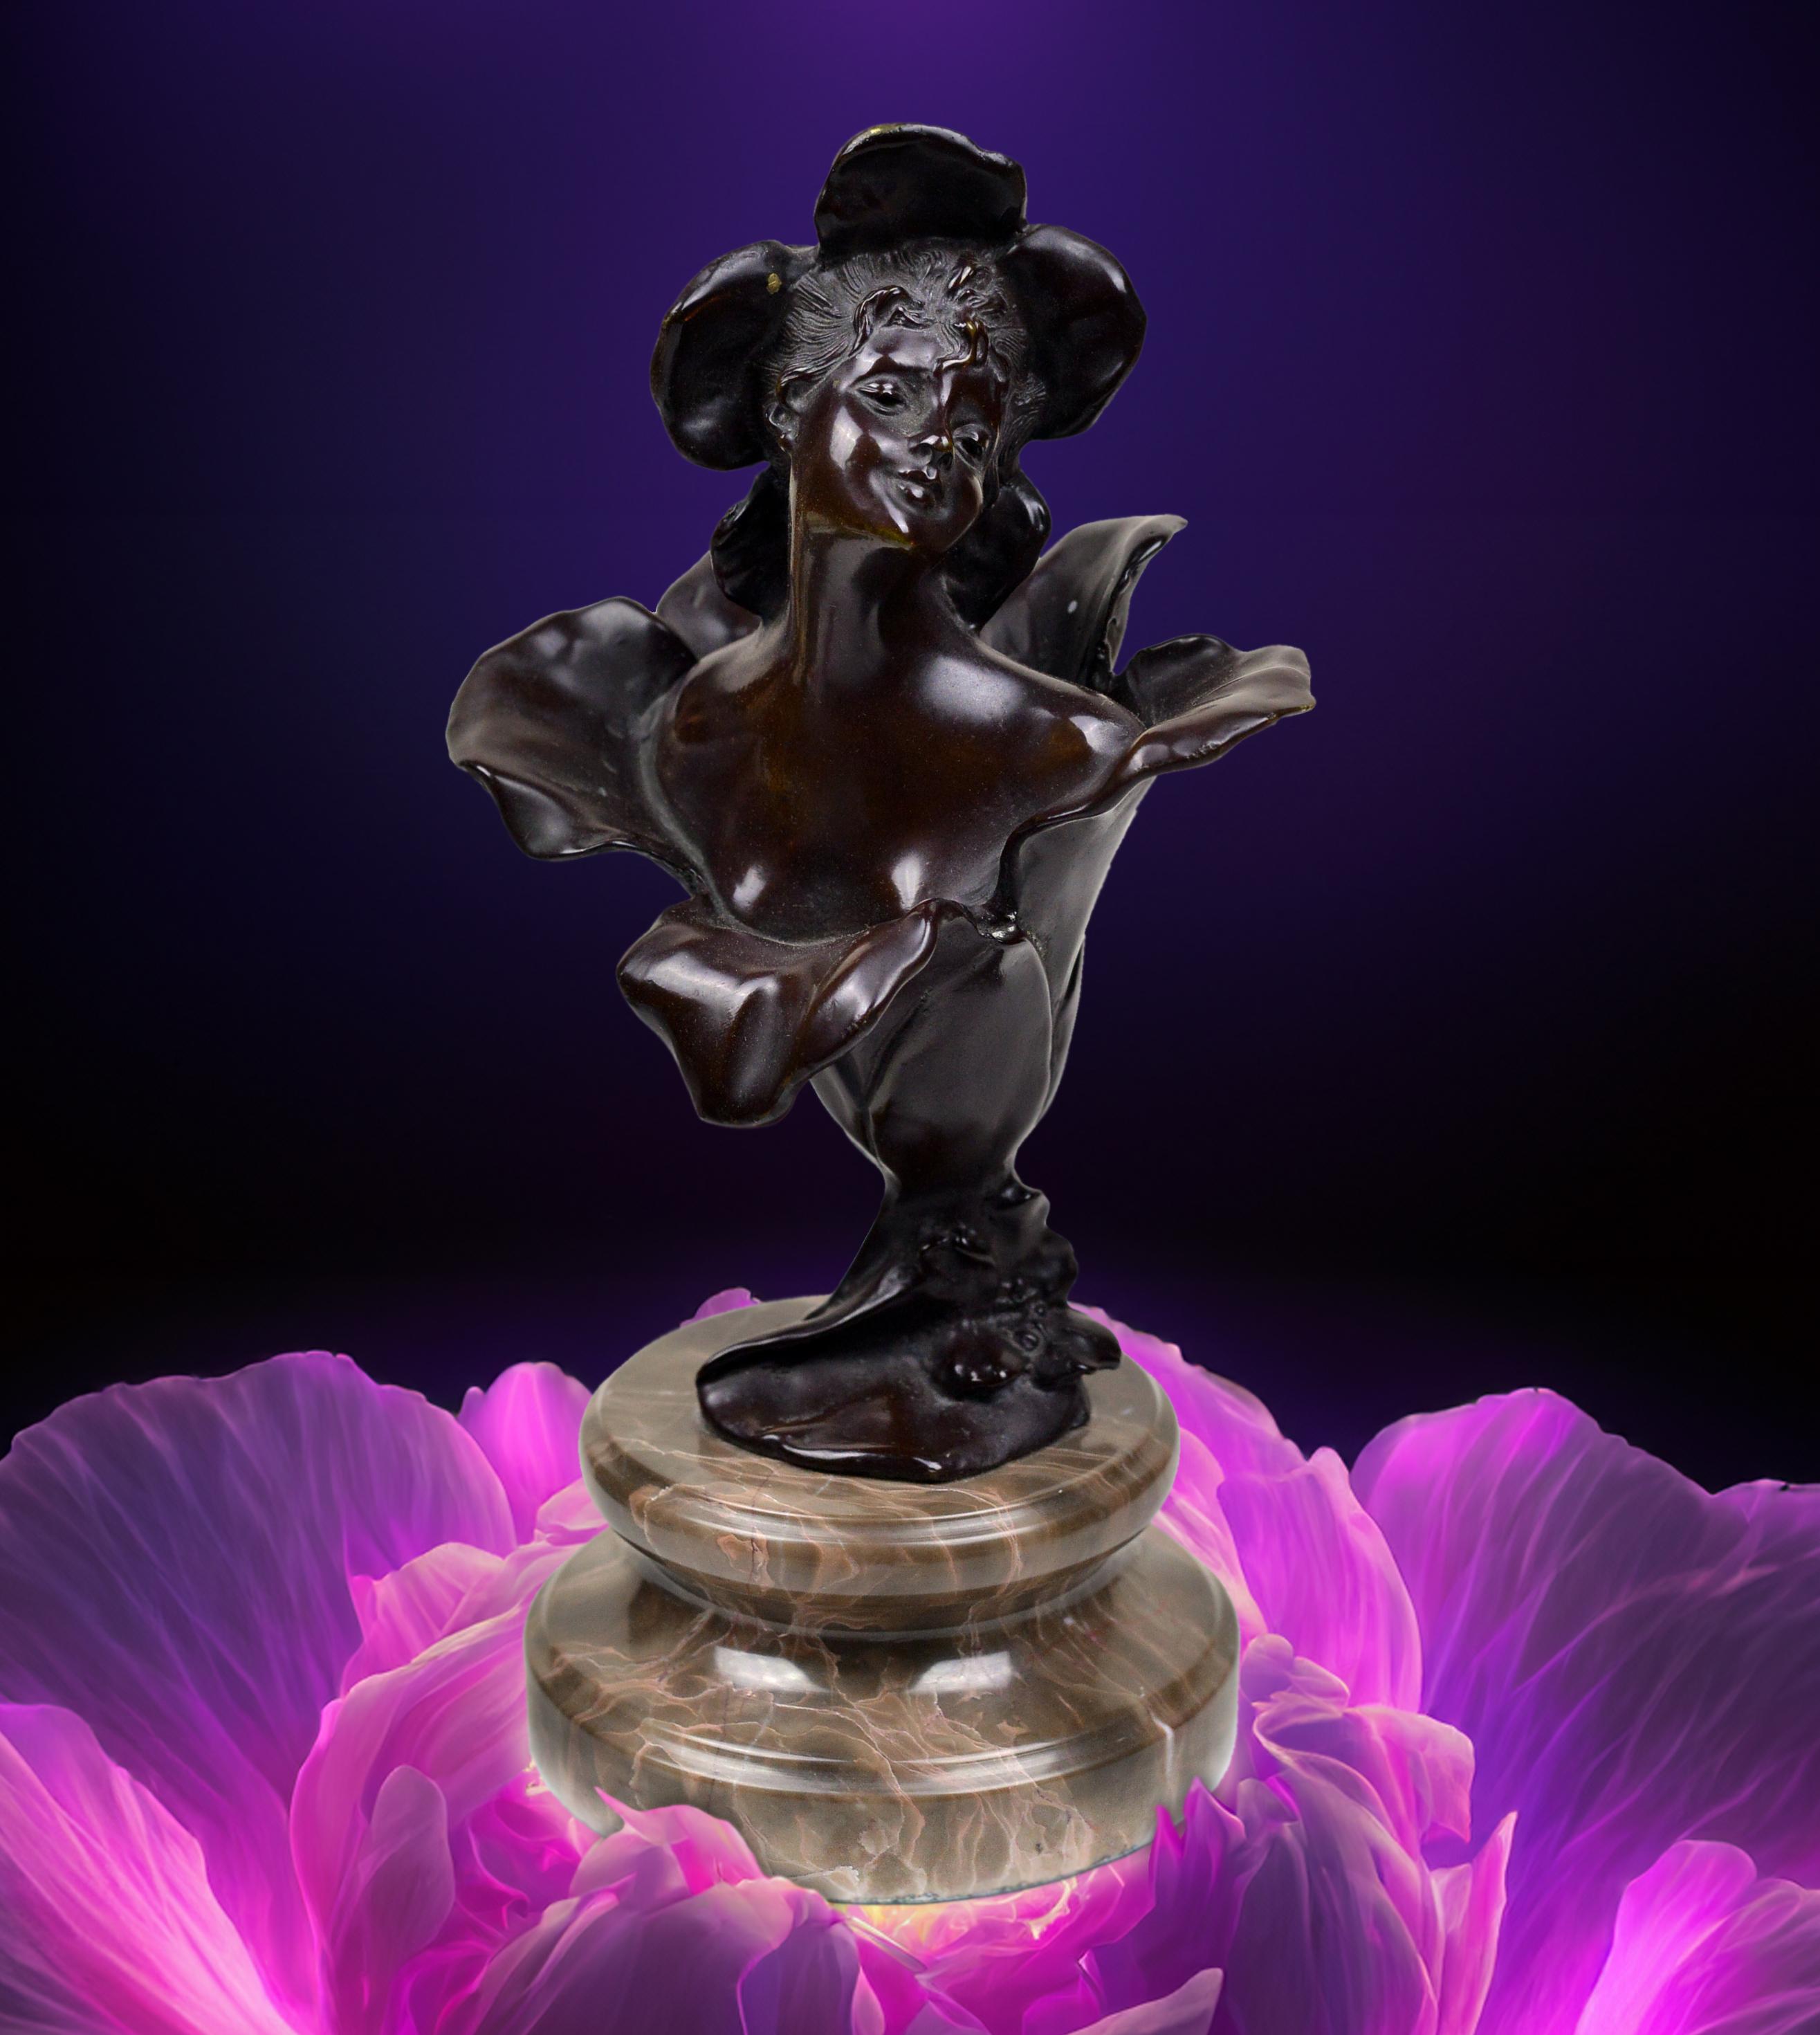 Magnifique sculpture en bronze du Petit Poucet du conte de fées de l'auteur danois Hans Christian Andersen. Très belle figure en bronze coulé de la fin du XIXe siècle dans le style Art nouveau. Le sculpteur n'a pas abordé cette œuvre de manière